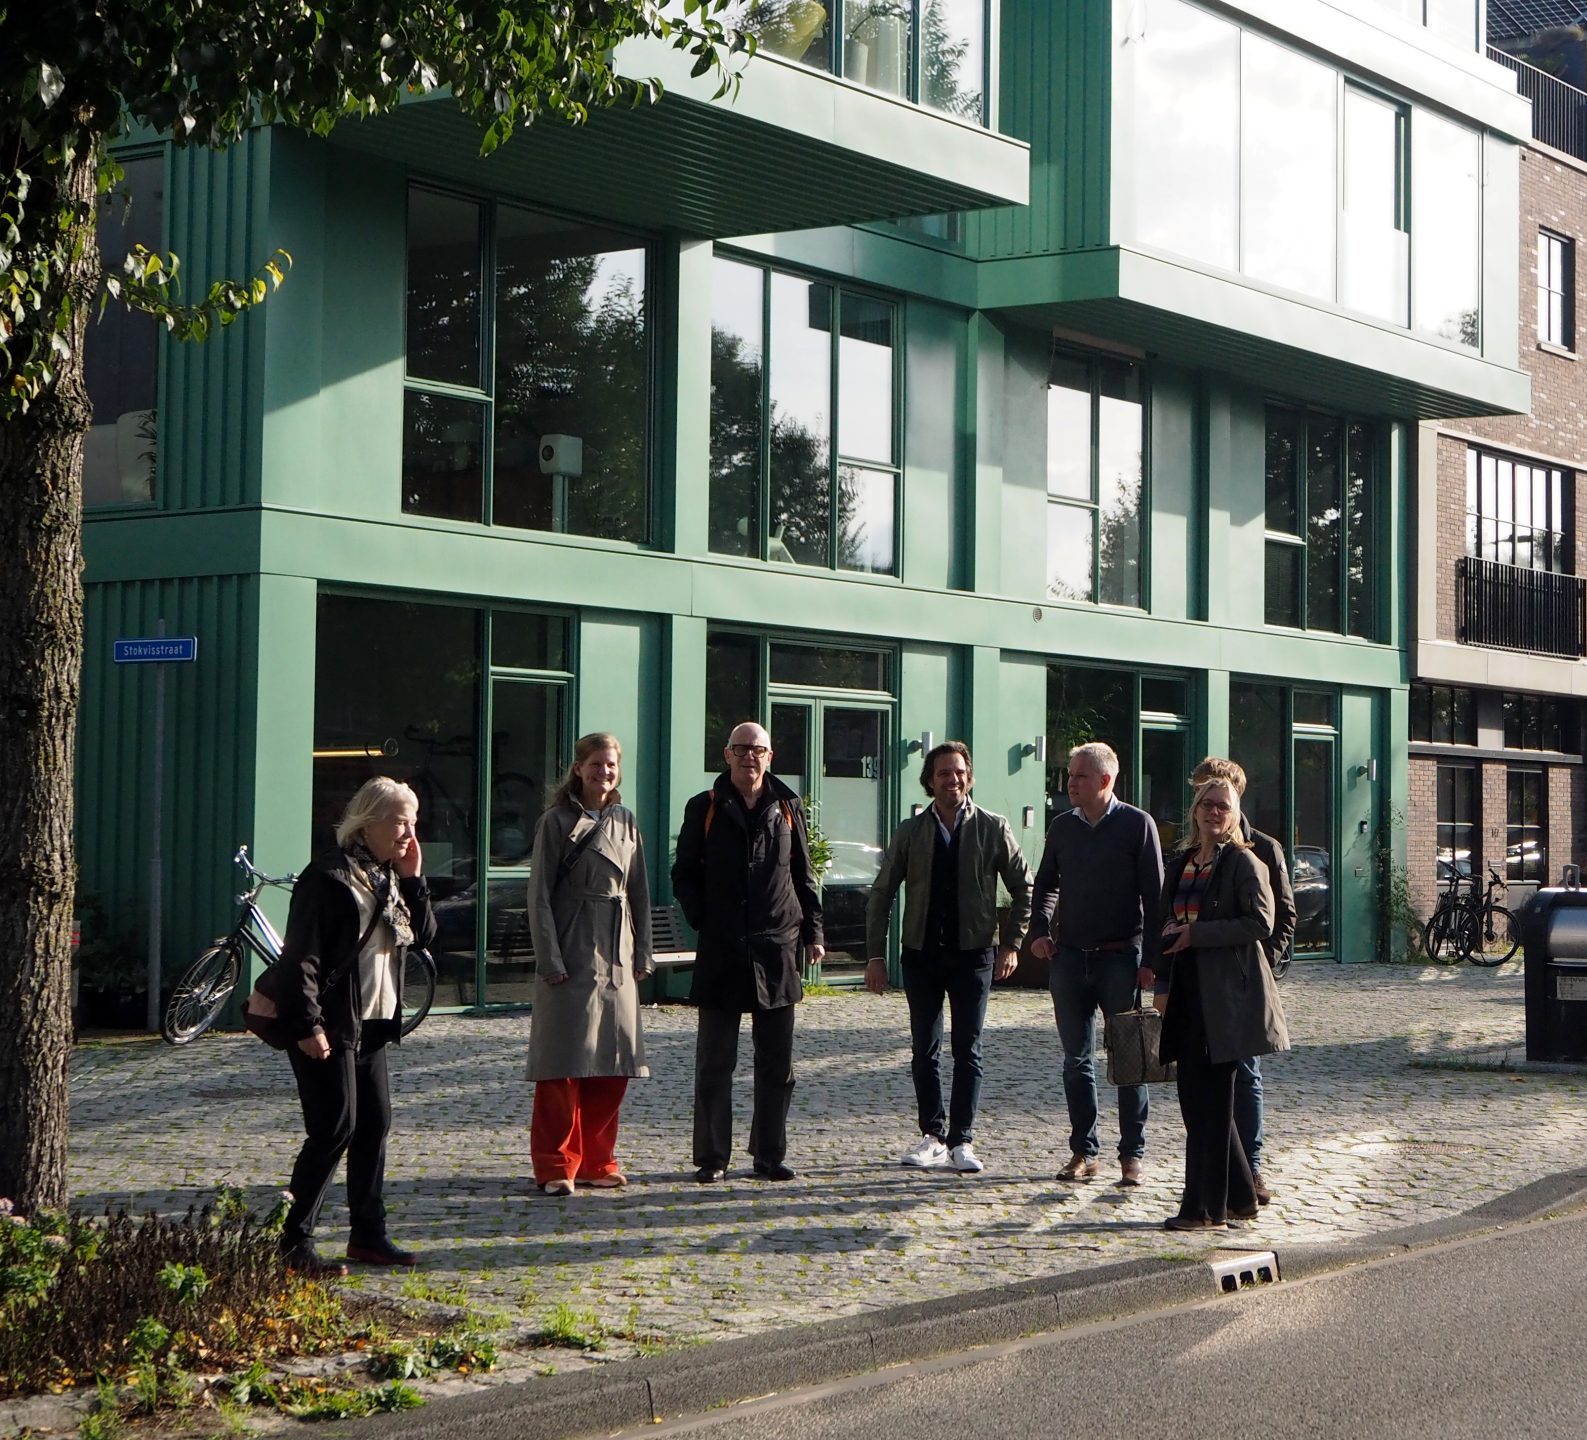 Jurybezoek aan de nominaties van de Deventer Architectuurprijs 2022